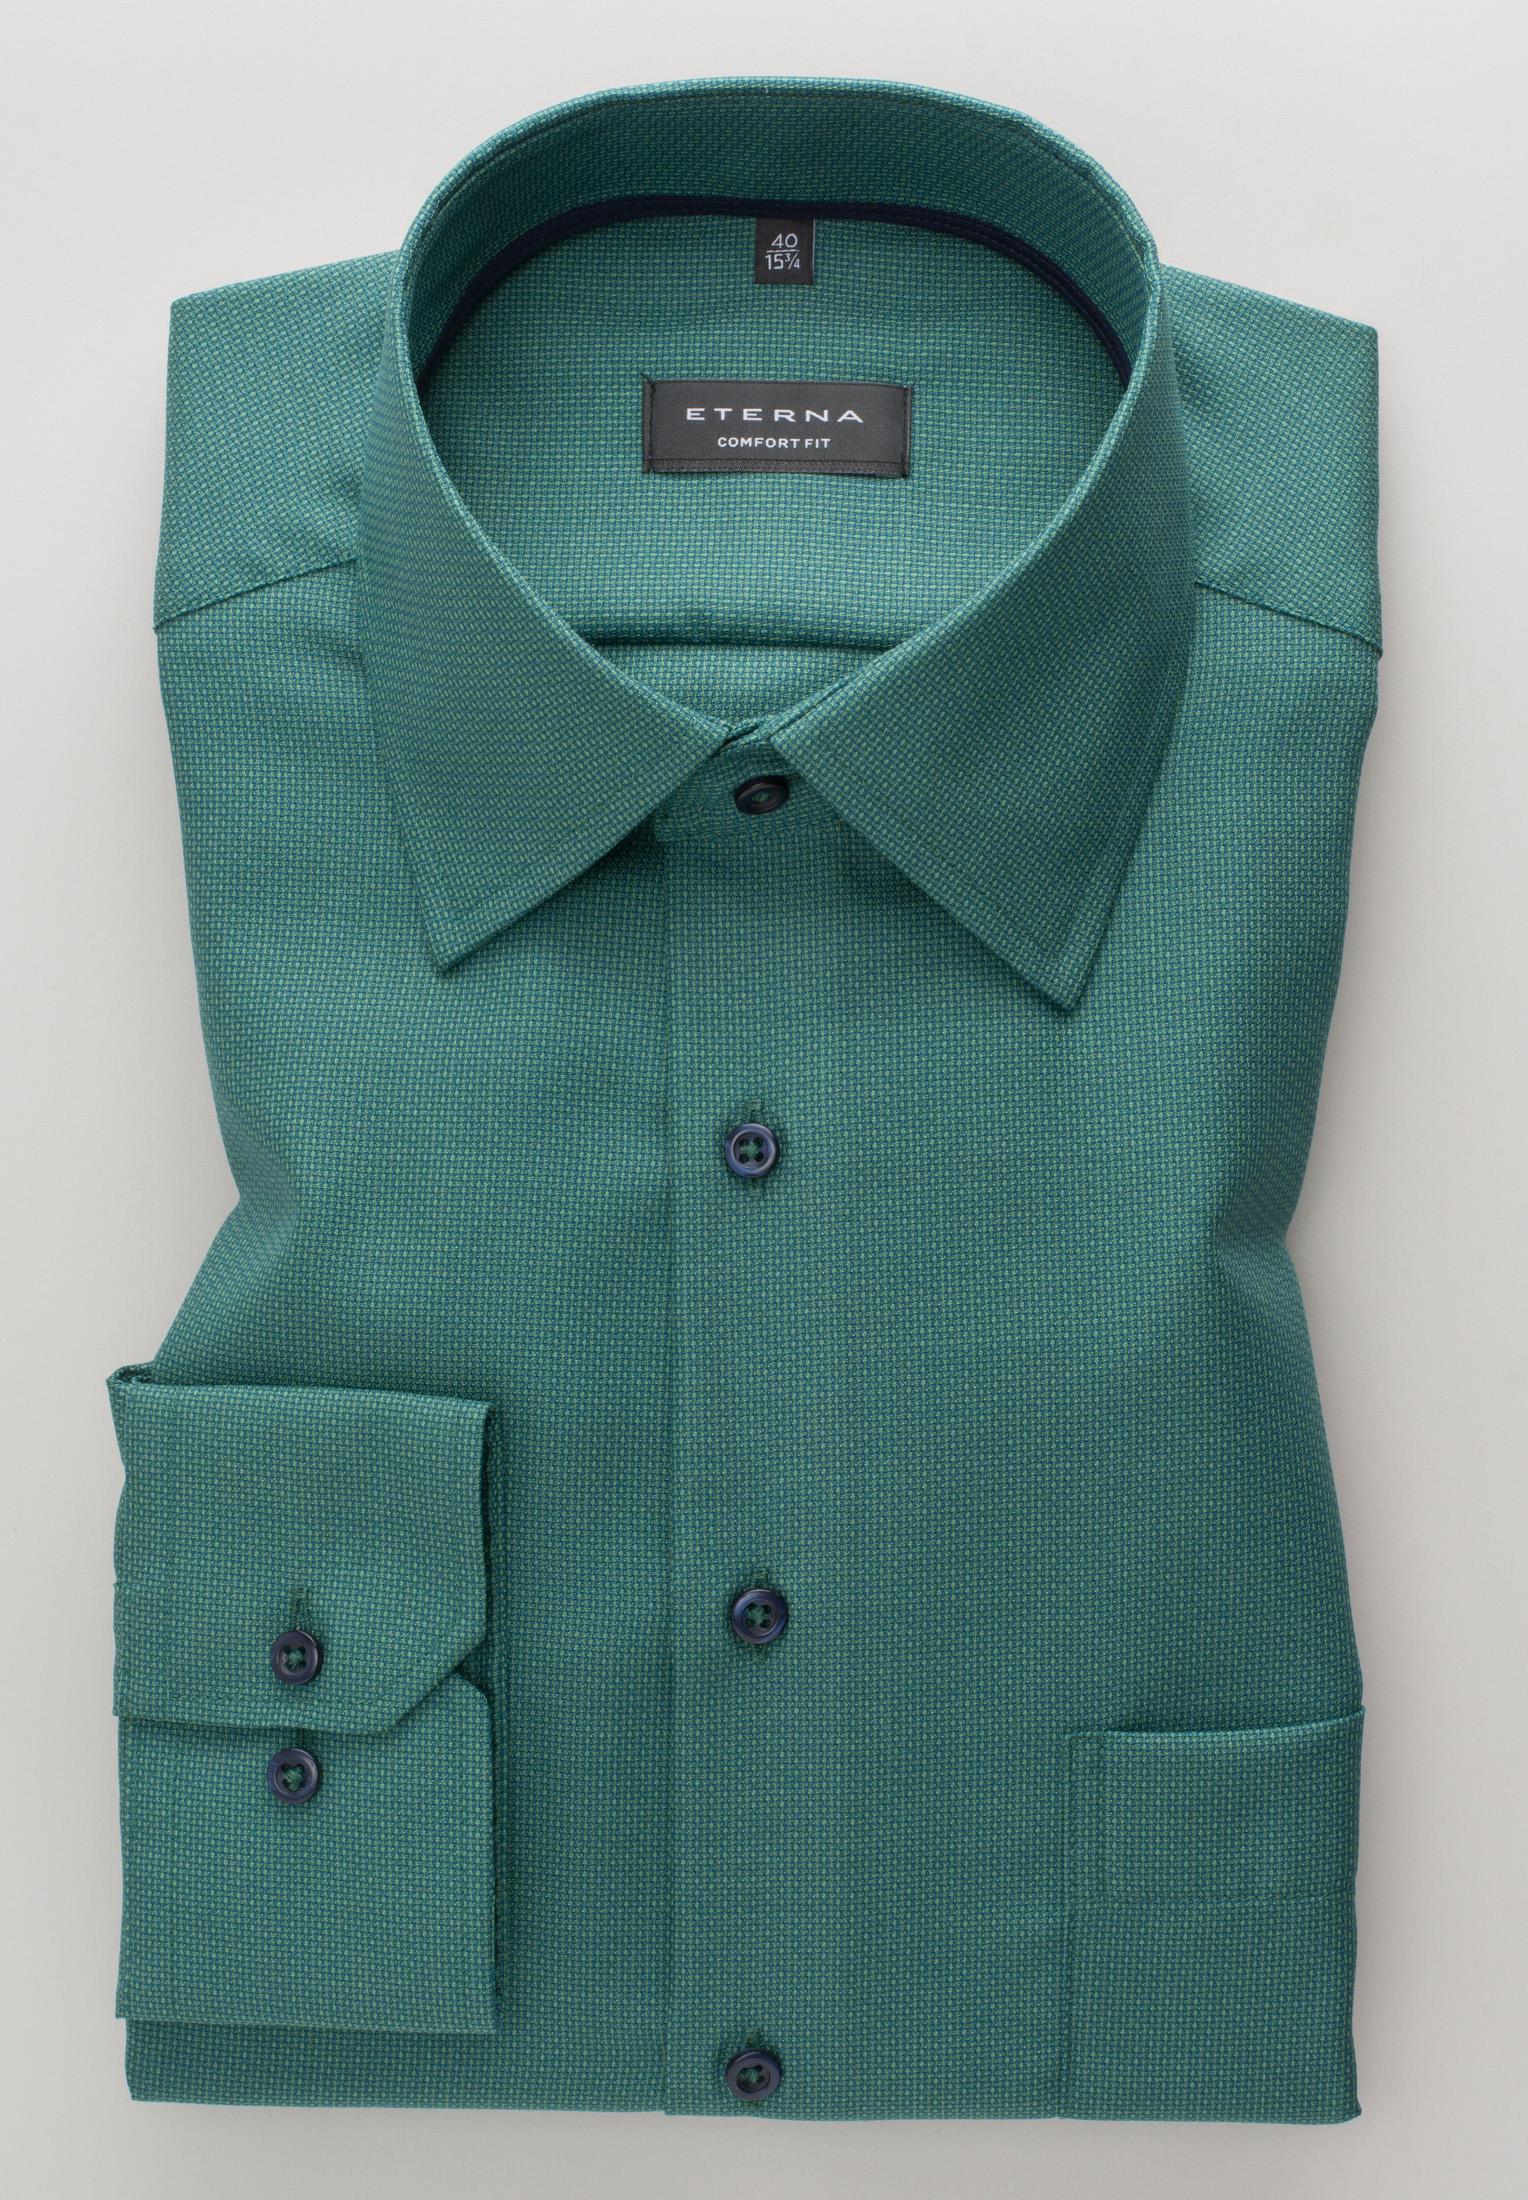 Мужская рубашка ETERNA, зеленая, цвет зеленый, размер 48 - фото 5